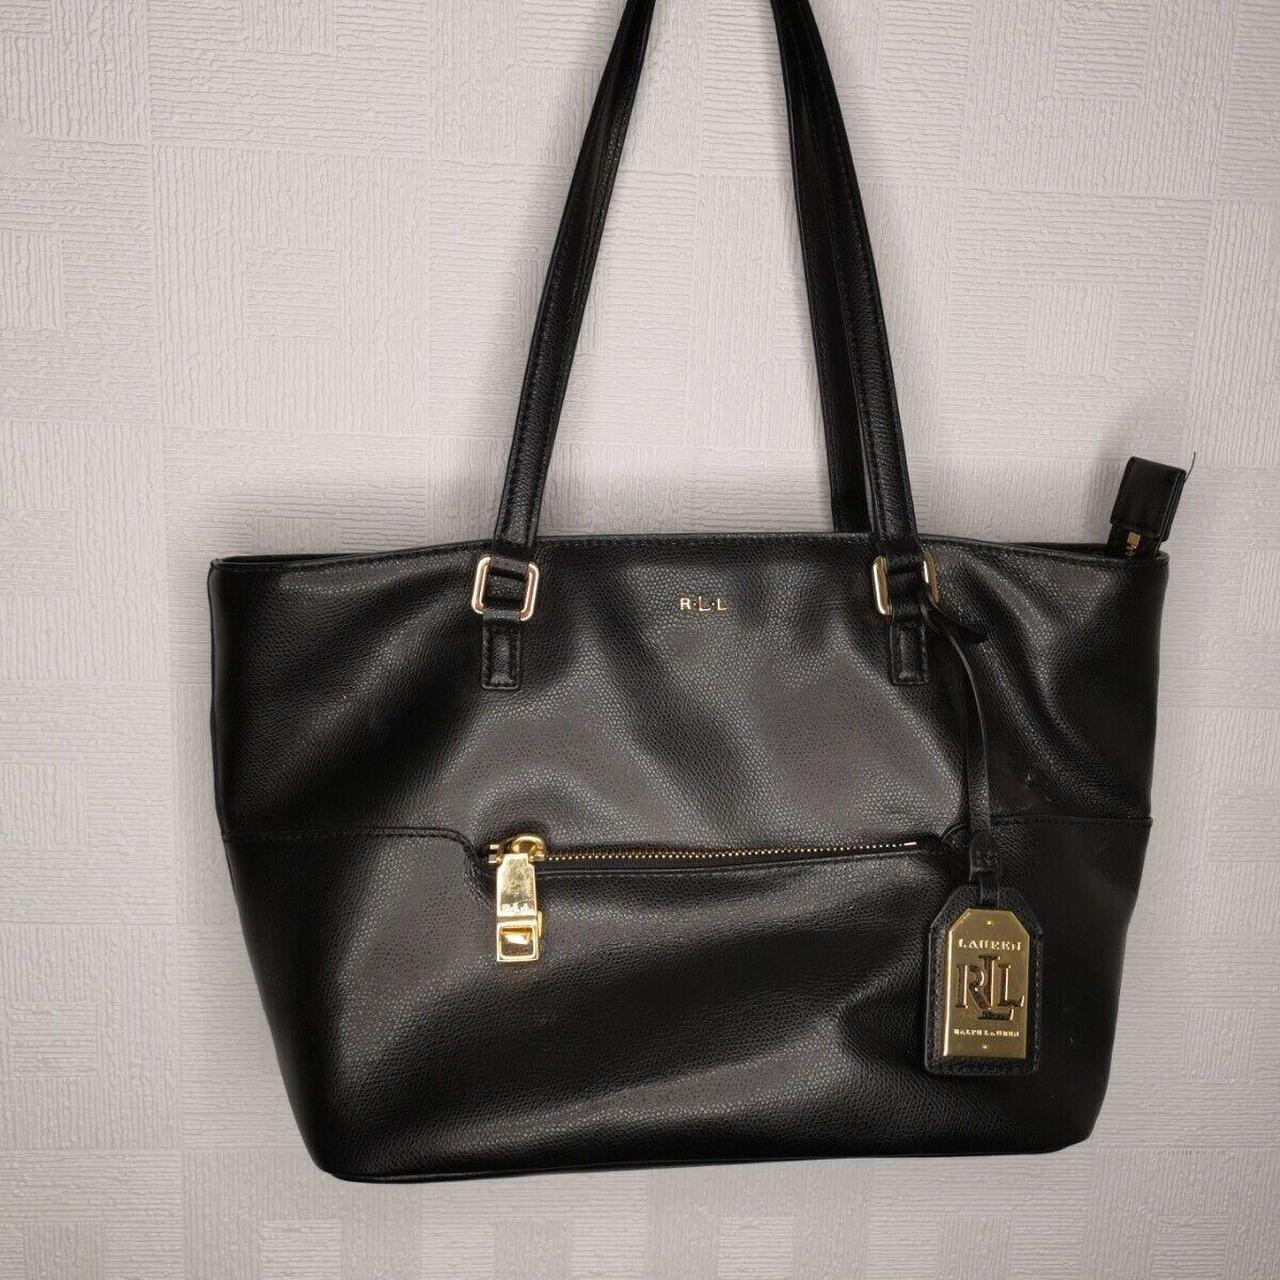 Official Ralph Lauren Black Leather Shoulder Bag... - Depop